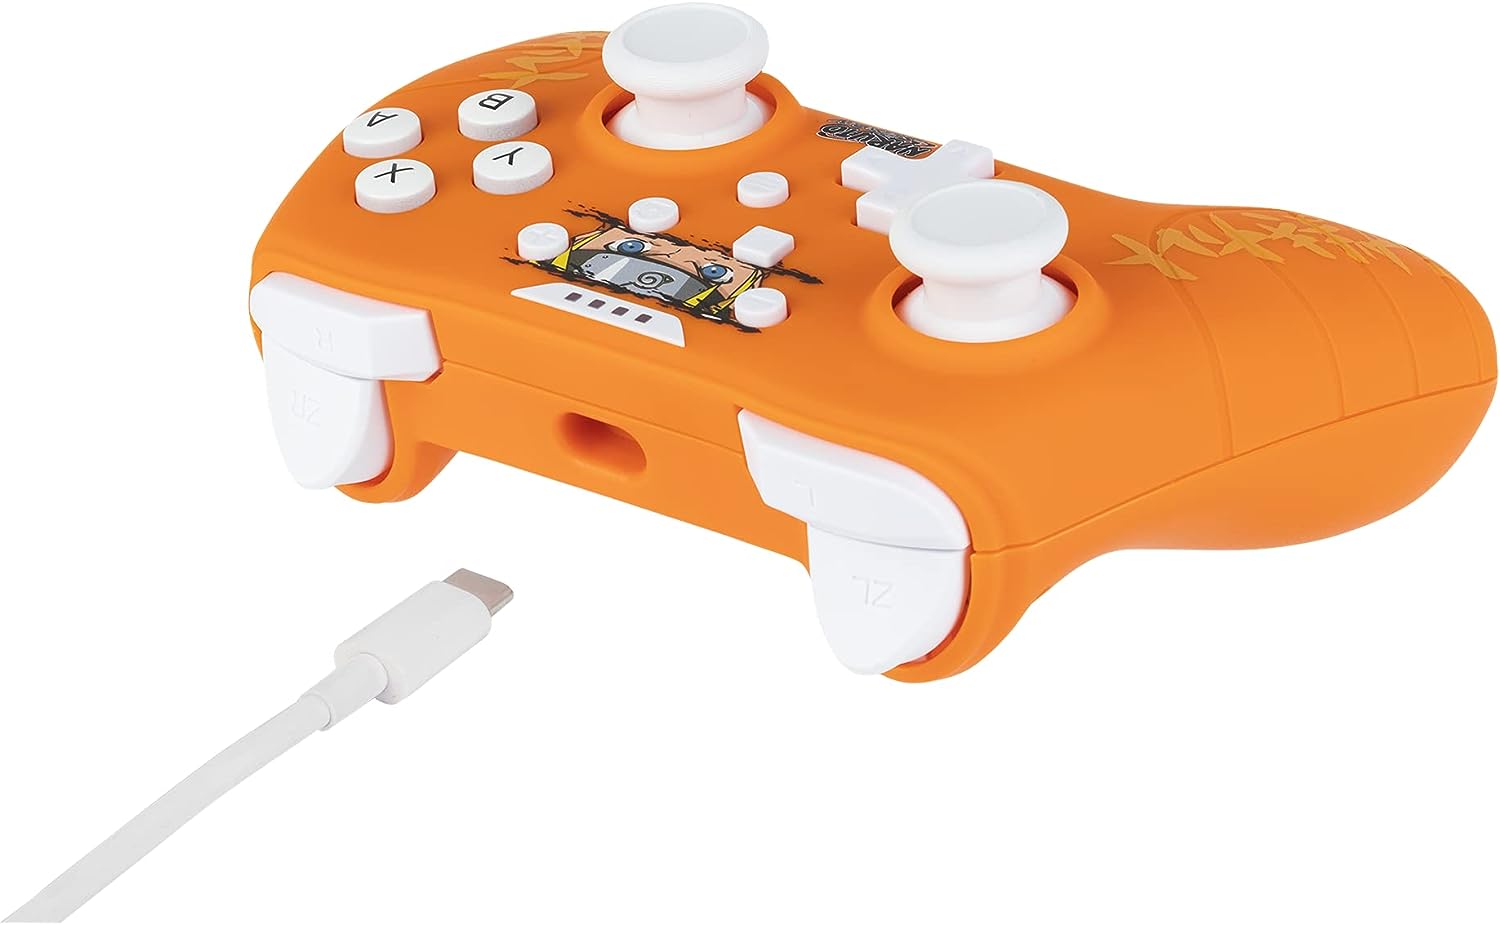 Контролер Konix - за Nintendo Switch/PC, жичен, Naruto, бял